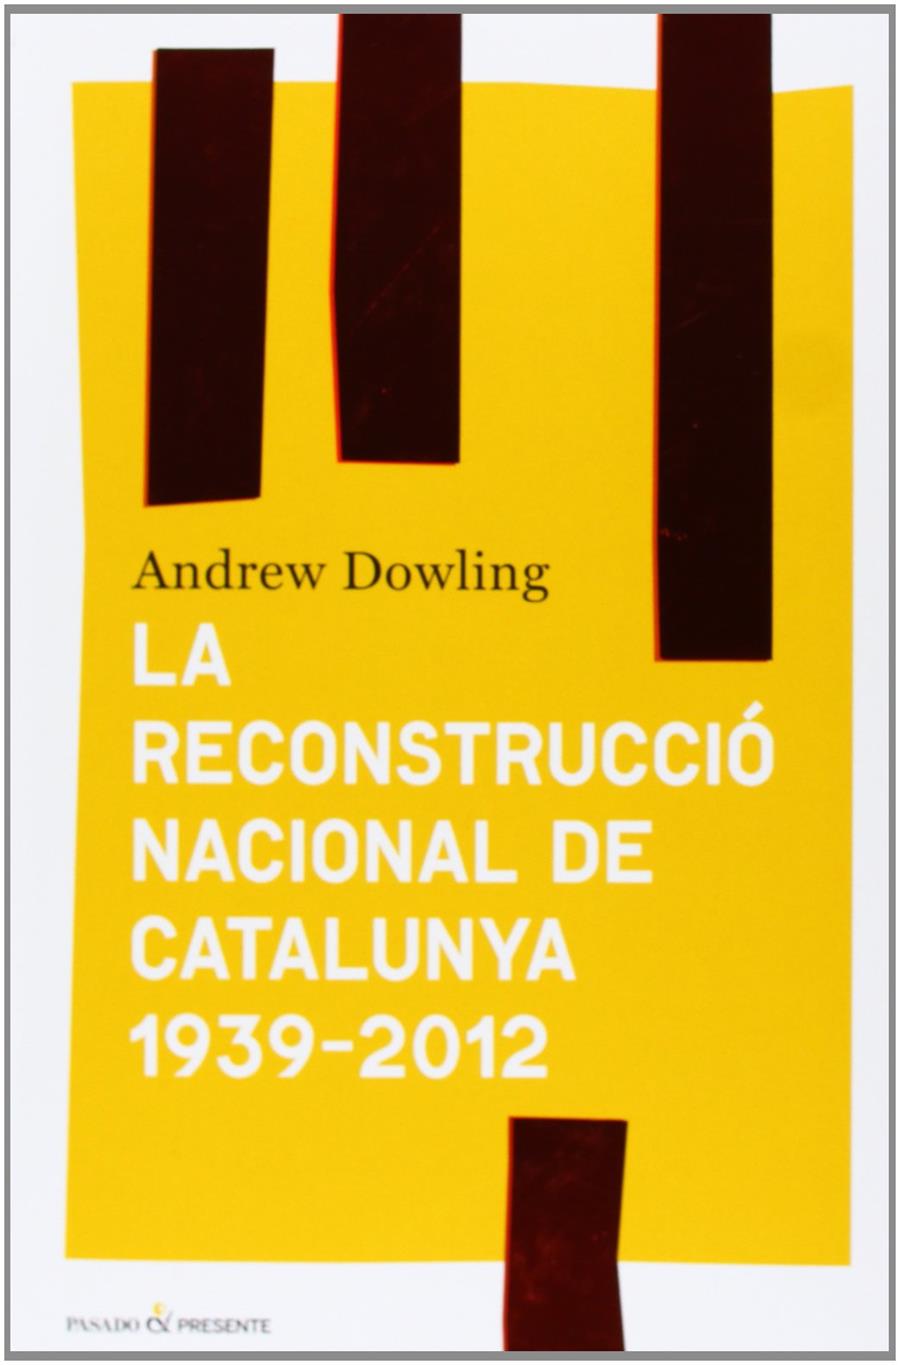 La reconstrucció nacional de Catalunya 1939-2012 | Andrew Dowling | Cooperativa autogestionària